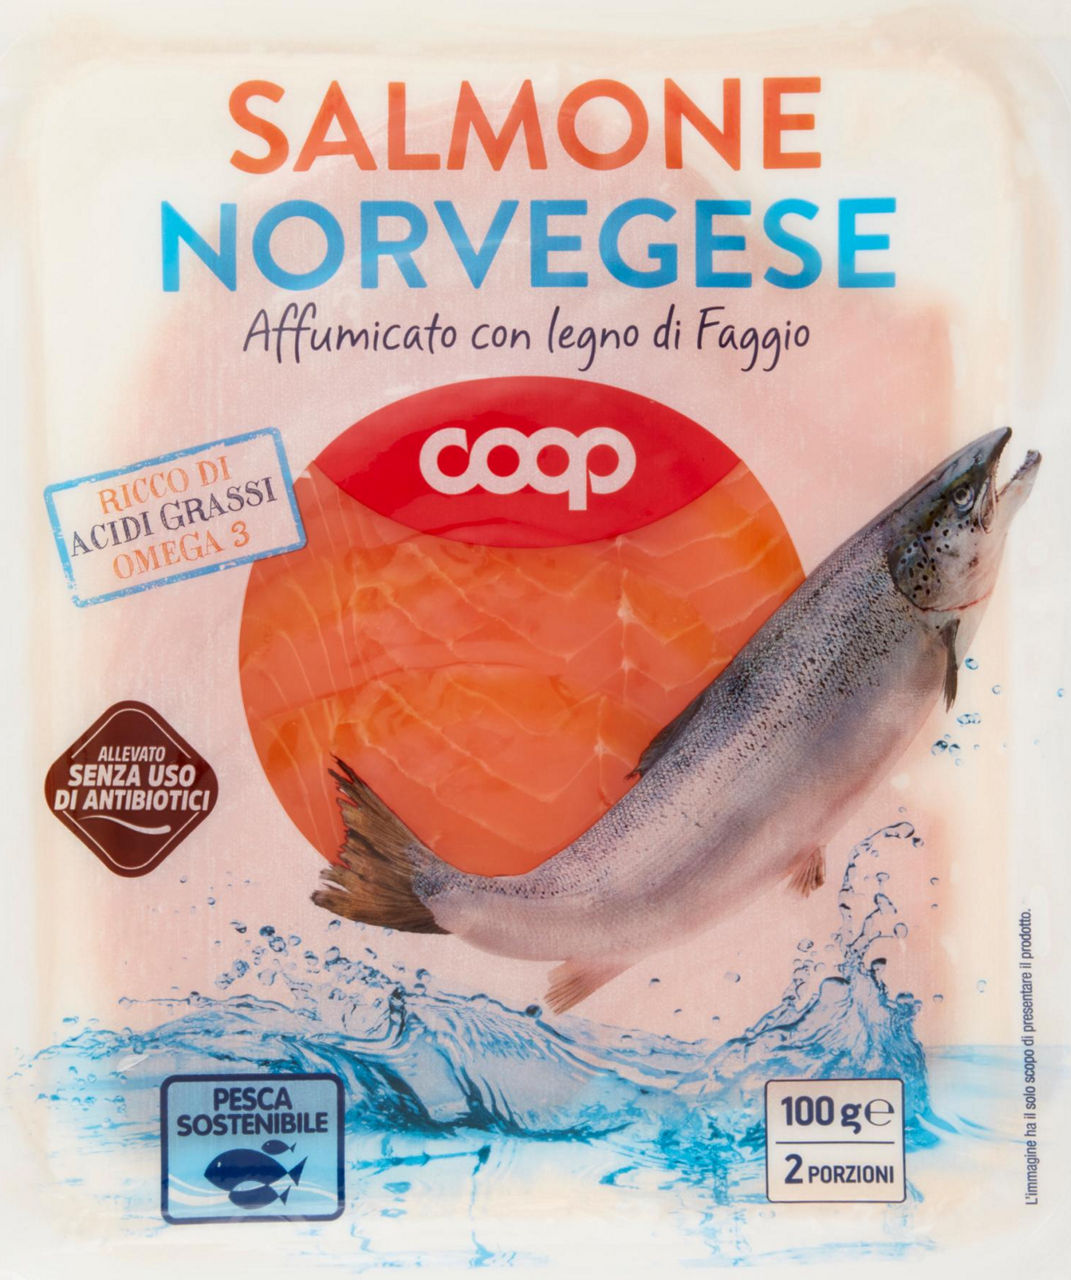 Salmone norvegese affumicato allevato s/antib. coop g 100